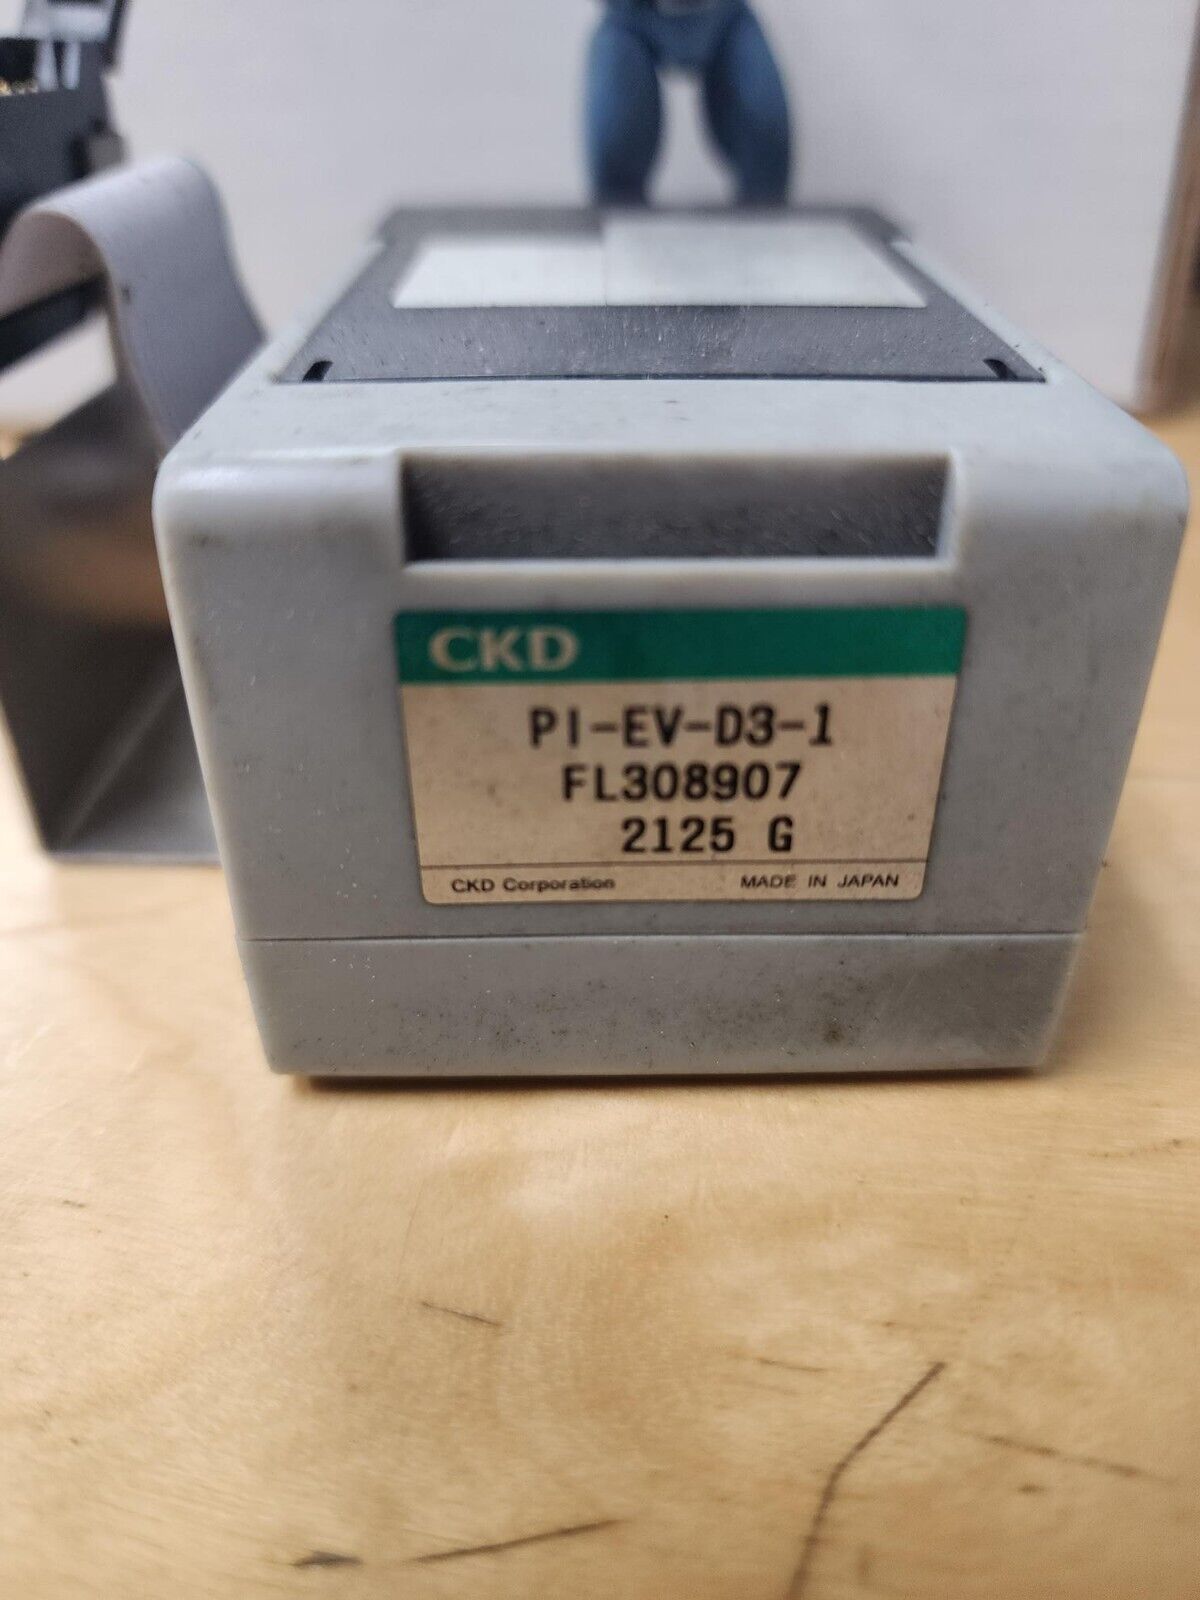 Amada laser CKD PI-EV-D3-1 FL308907